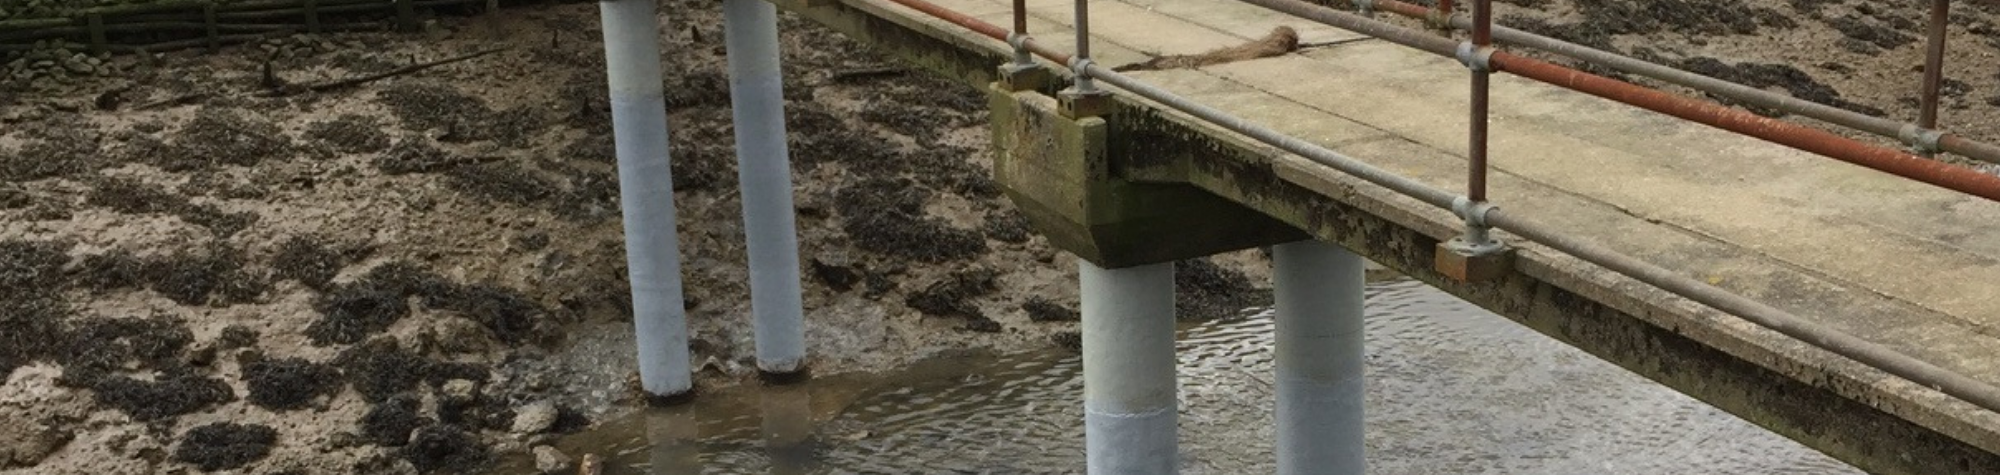 Repairs Take Place To Fix UK Bridges